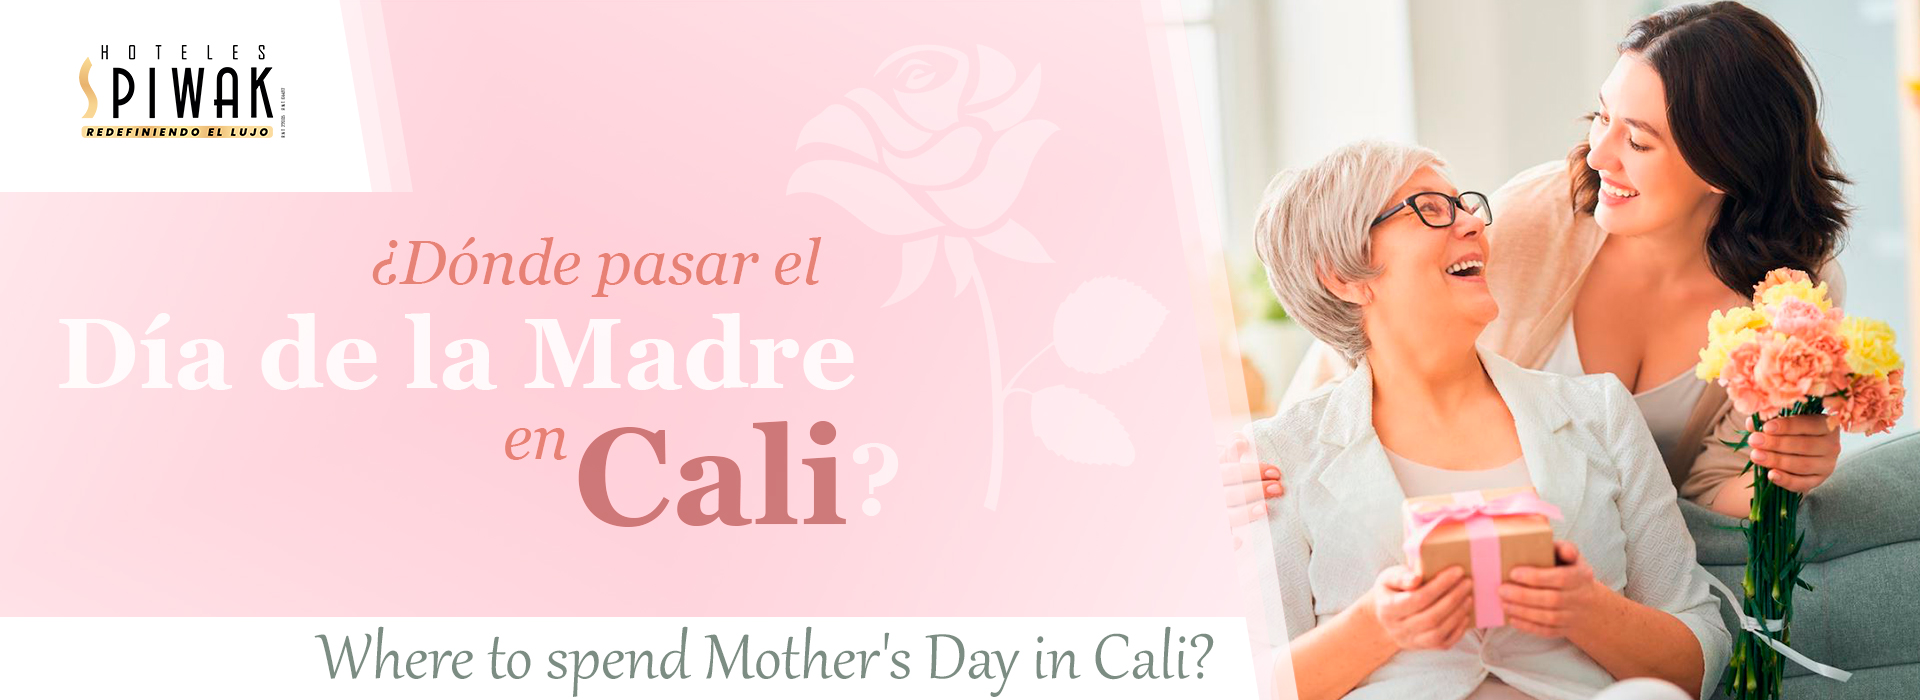 ¿Dónde pasar el Día de la Madre en Cali?